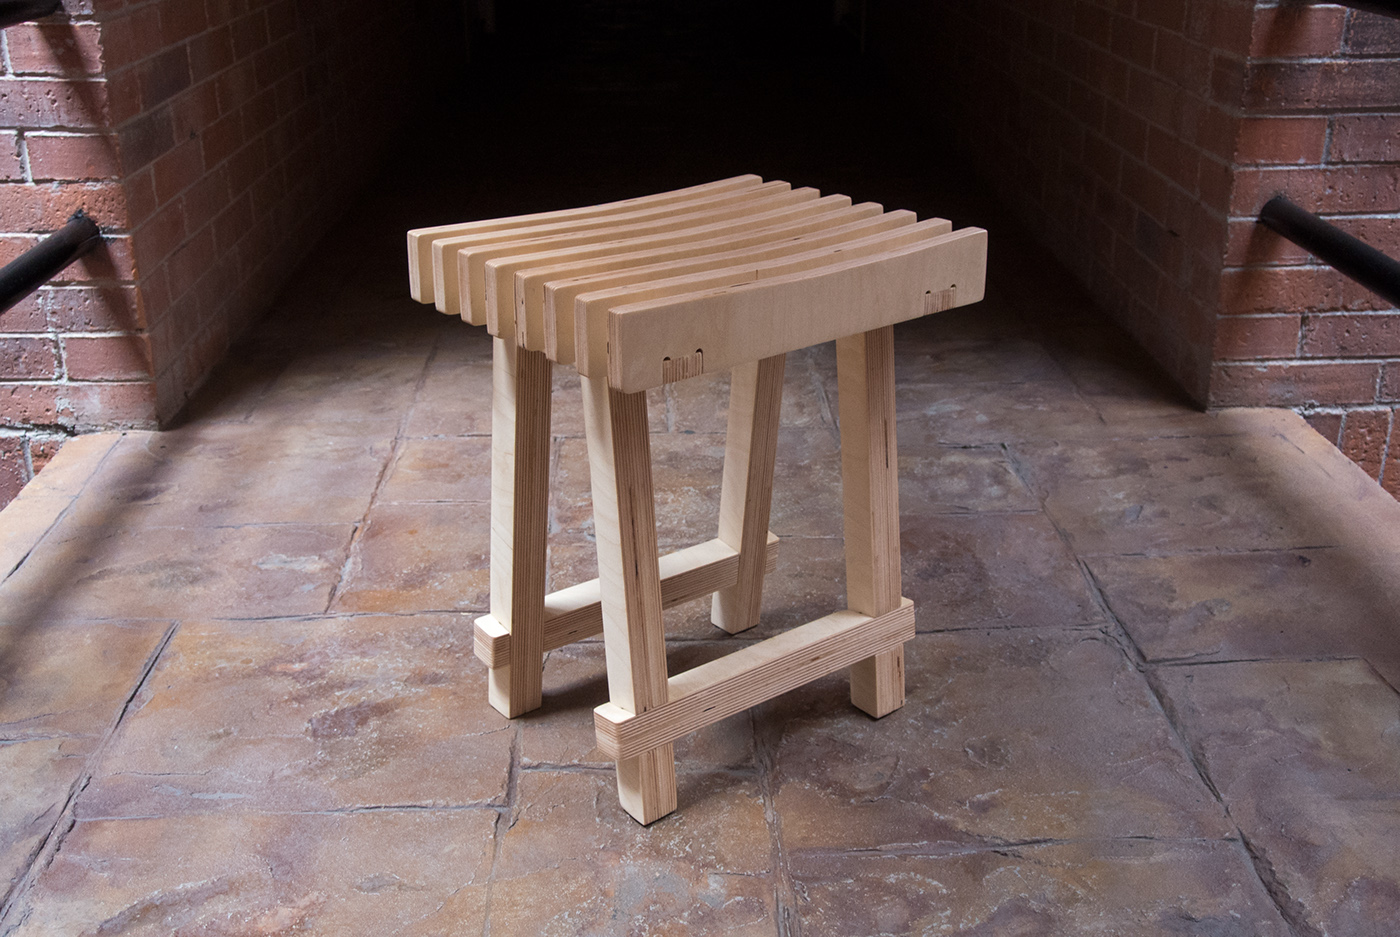 Arado plow banco diseño mexicano Mexican Design diseño industrial stool cnc plywood mobiliario